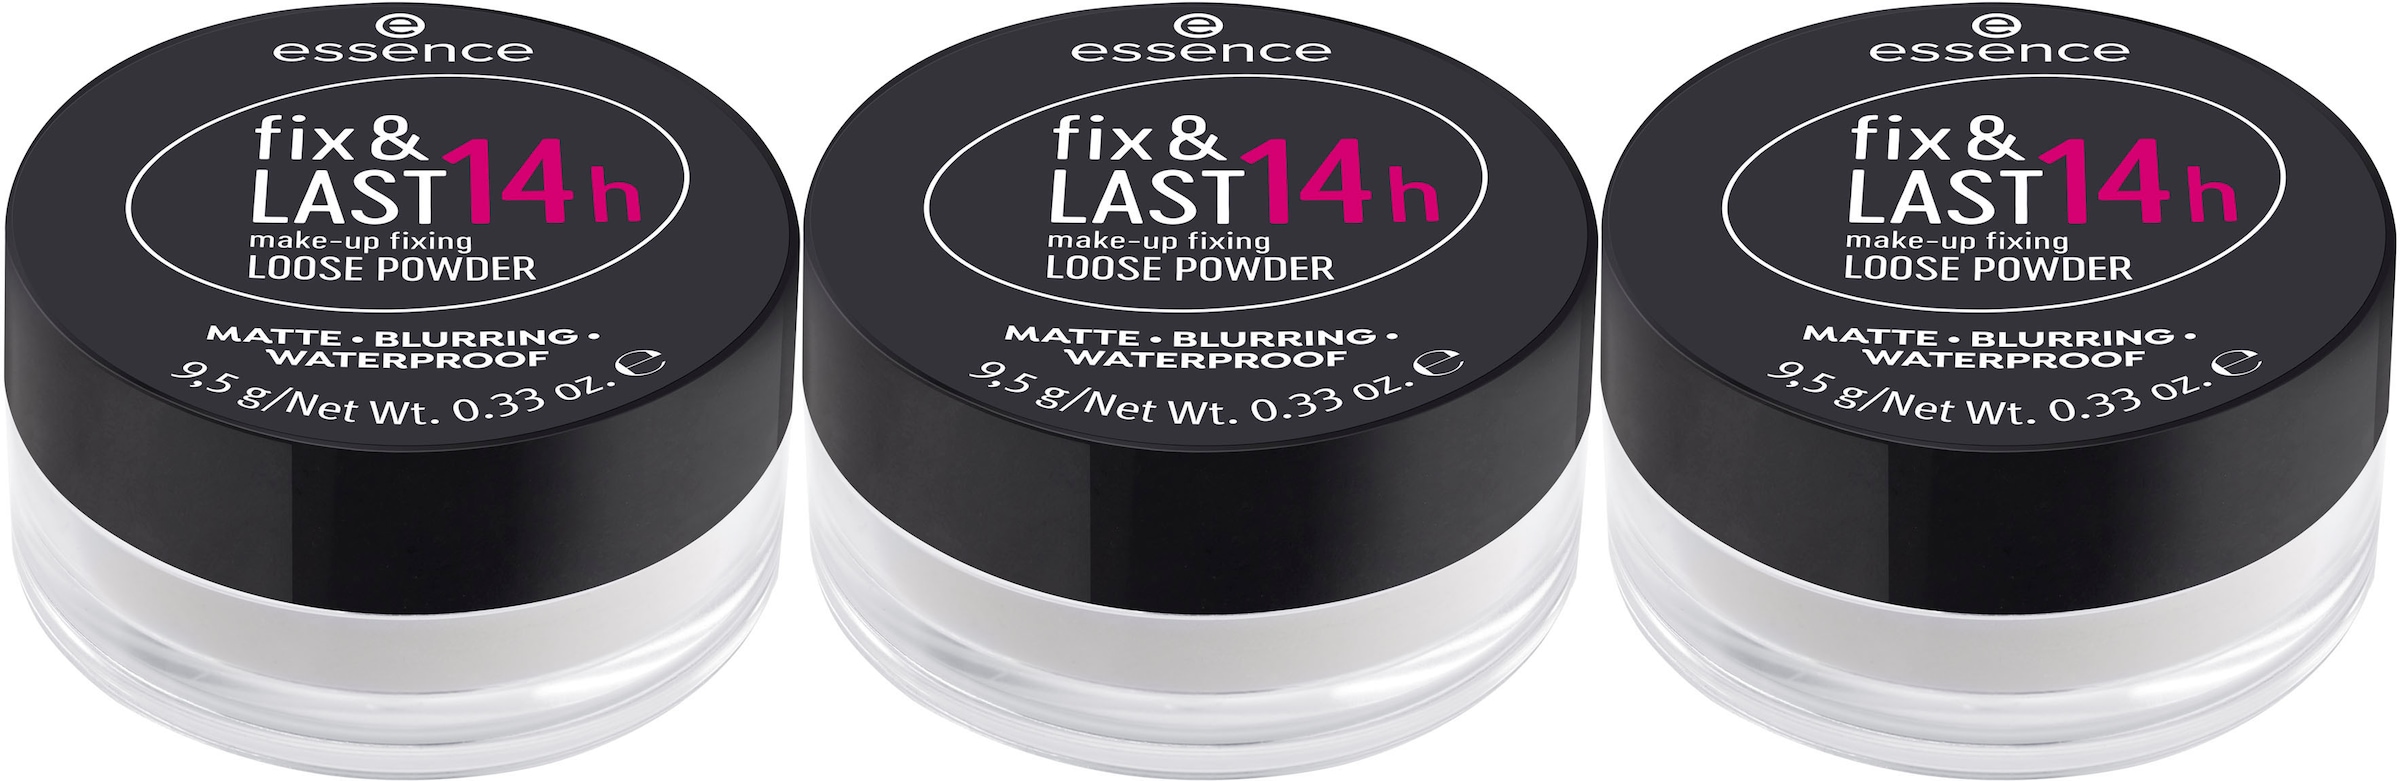 Essence Puder »fix & LAST 14h make-up fixing L...